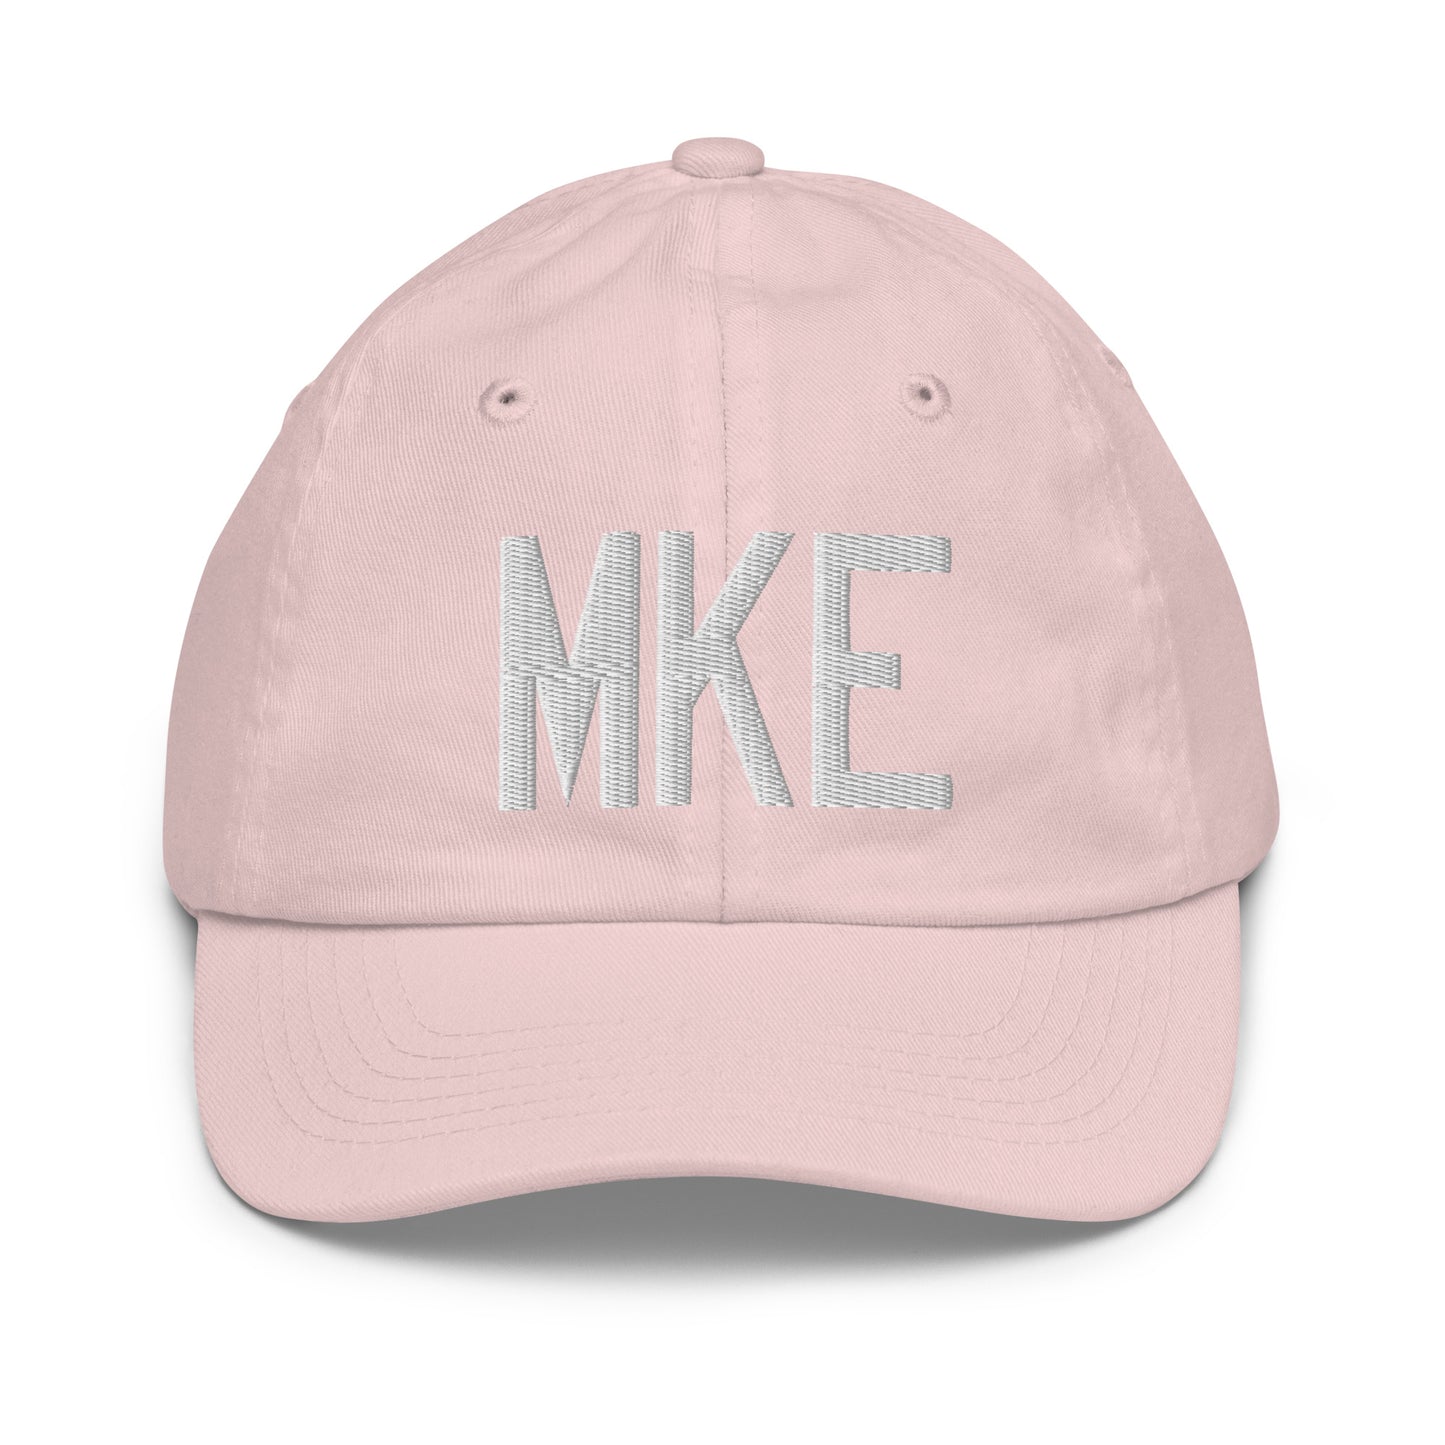 Airport Code Kid's Baseball Cap - White • MKE Milwaukee • YHM Designs - Image 31